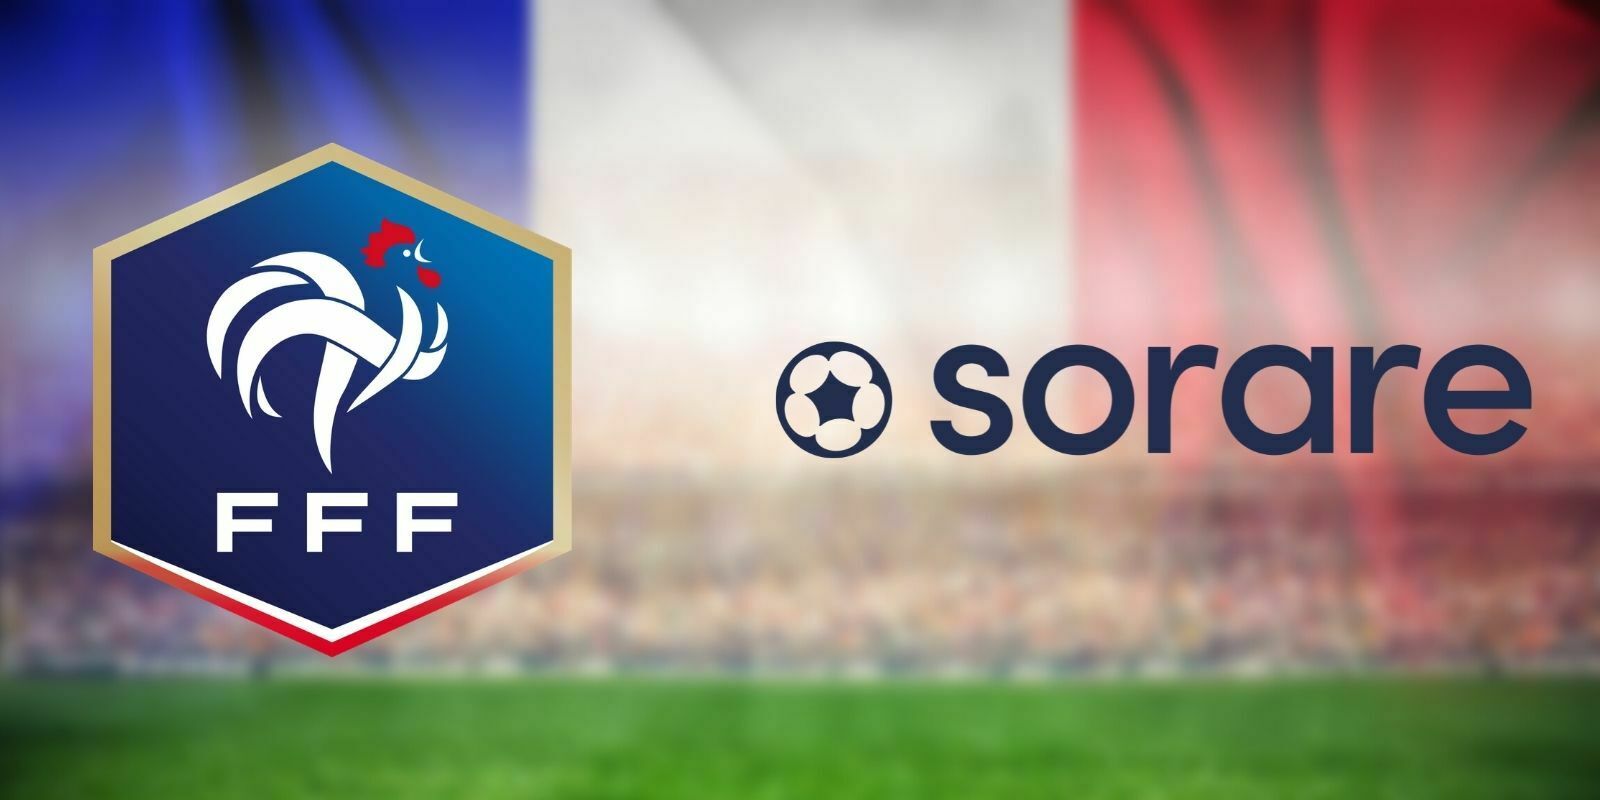 L'équipe de France de football arrive sur la blockchain via le jeu Sorare